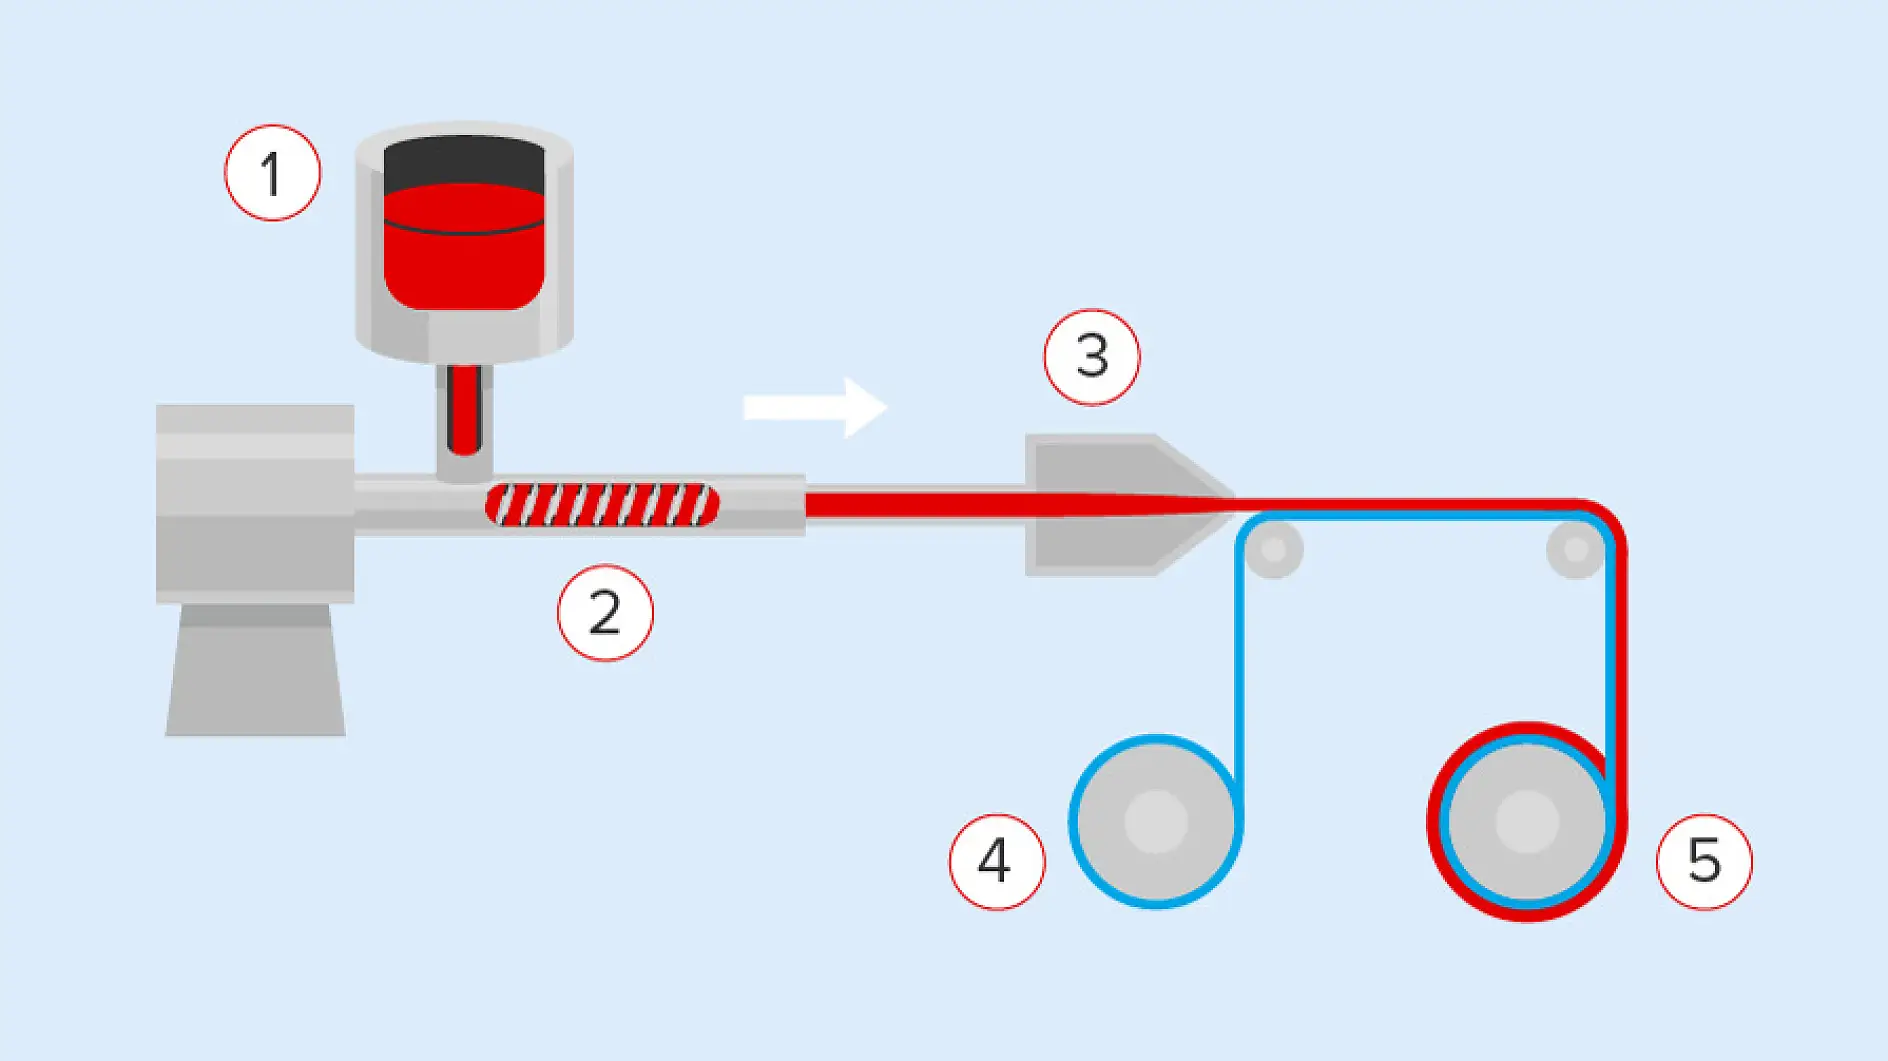 Akrila līmvielas var būt pārklātas tradicionāli —​ar šķīdinātājiem (ūdeni vai ķimikālijām) vai bez šķīdinātāja, kā aprakstīts iepriekš. Sastāvdaļas tiek uzkarsētas (1), sajauktas un savstarpēji sasaistītas īpašā ekstrūzijas procesā (2), un pēc tam tieši uzklātas (3) uz armējuma (4). Visbeidzot lente tiek uztīta un sagriezta ruļļos (5).